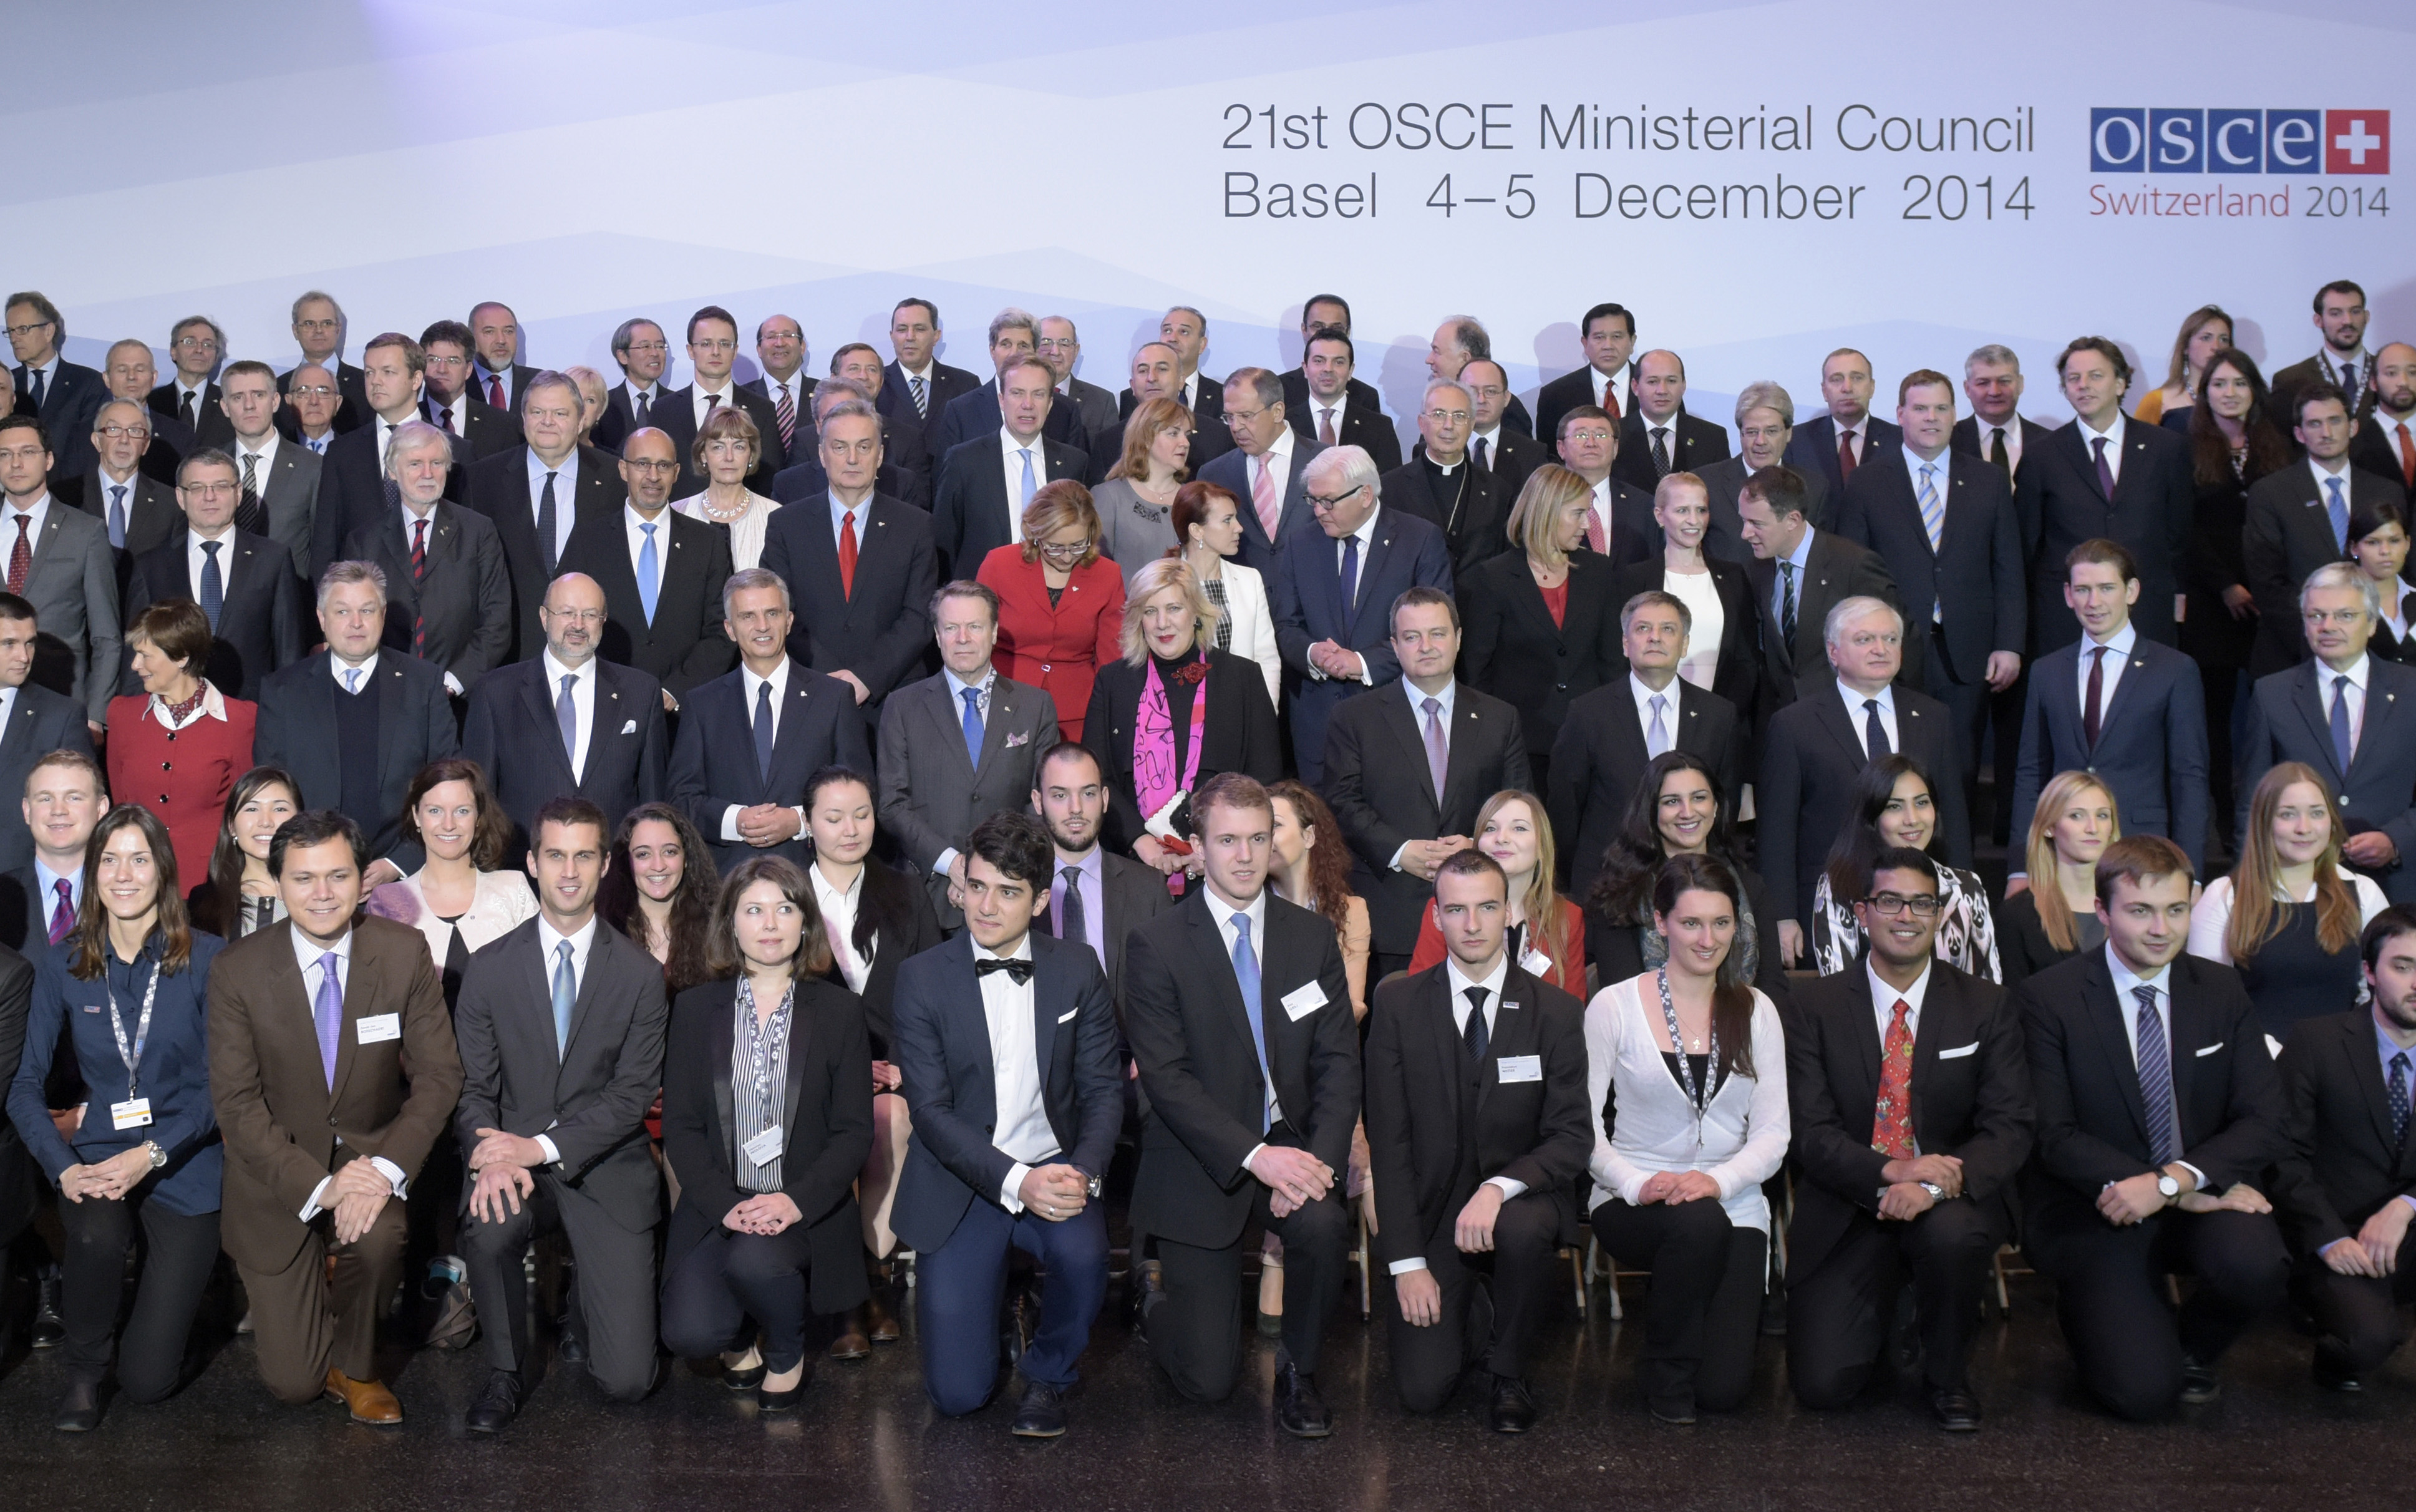 Les ambassadeurs de la jeunesse de l'OSCE prennent la pose pour une photo de groupe avec les ministres des affaires étrangères en décembre 2014